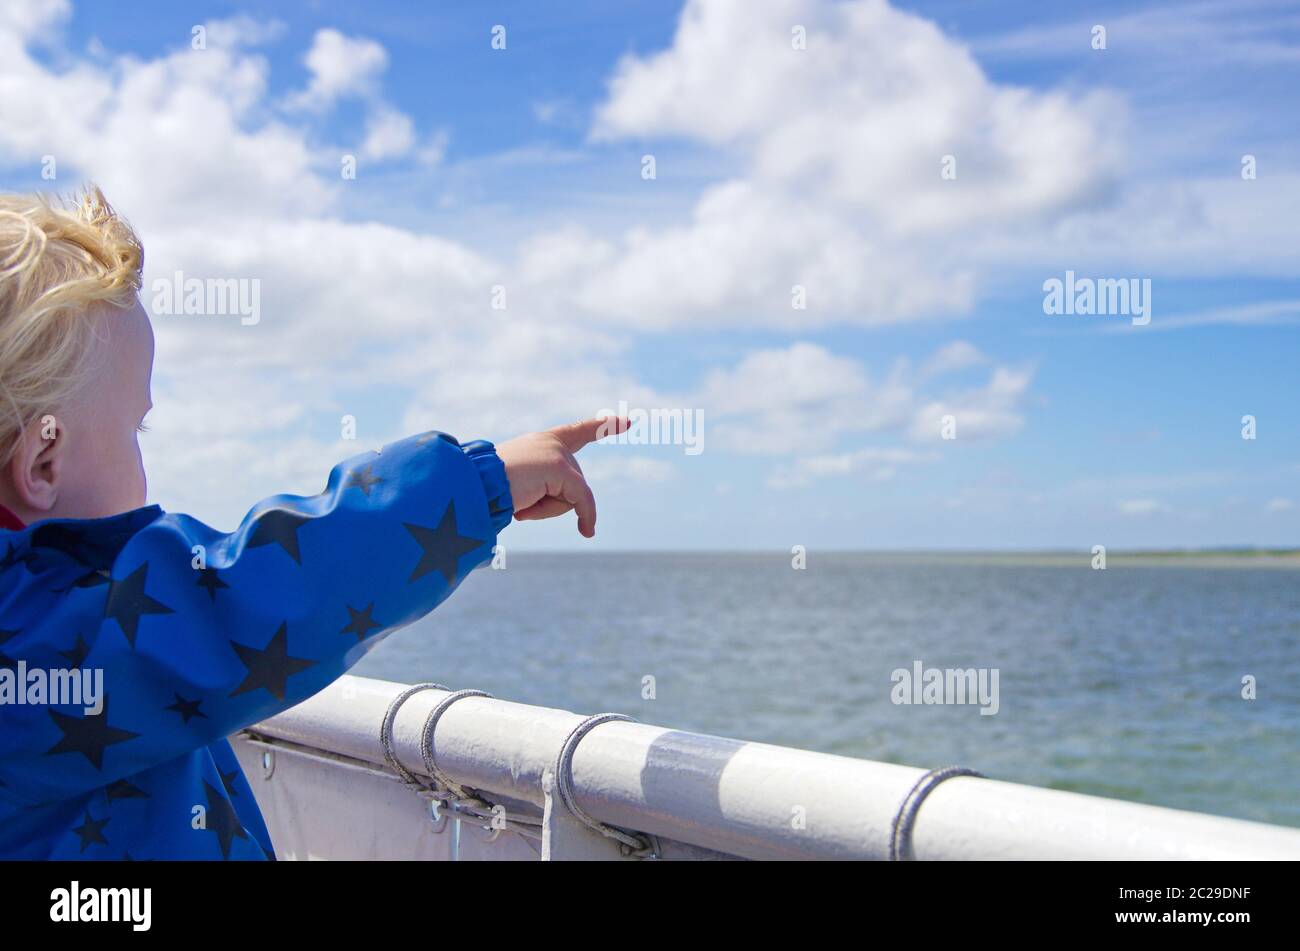 Ein Kleinkind auf einer Fähre zeigt mit einem Finger in Richtung Insel und blauem Himmel mit Wolken Stock Photo